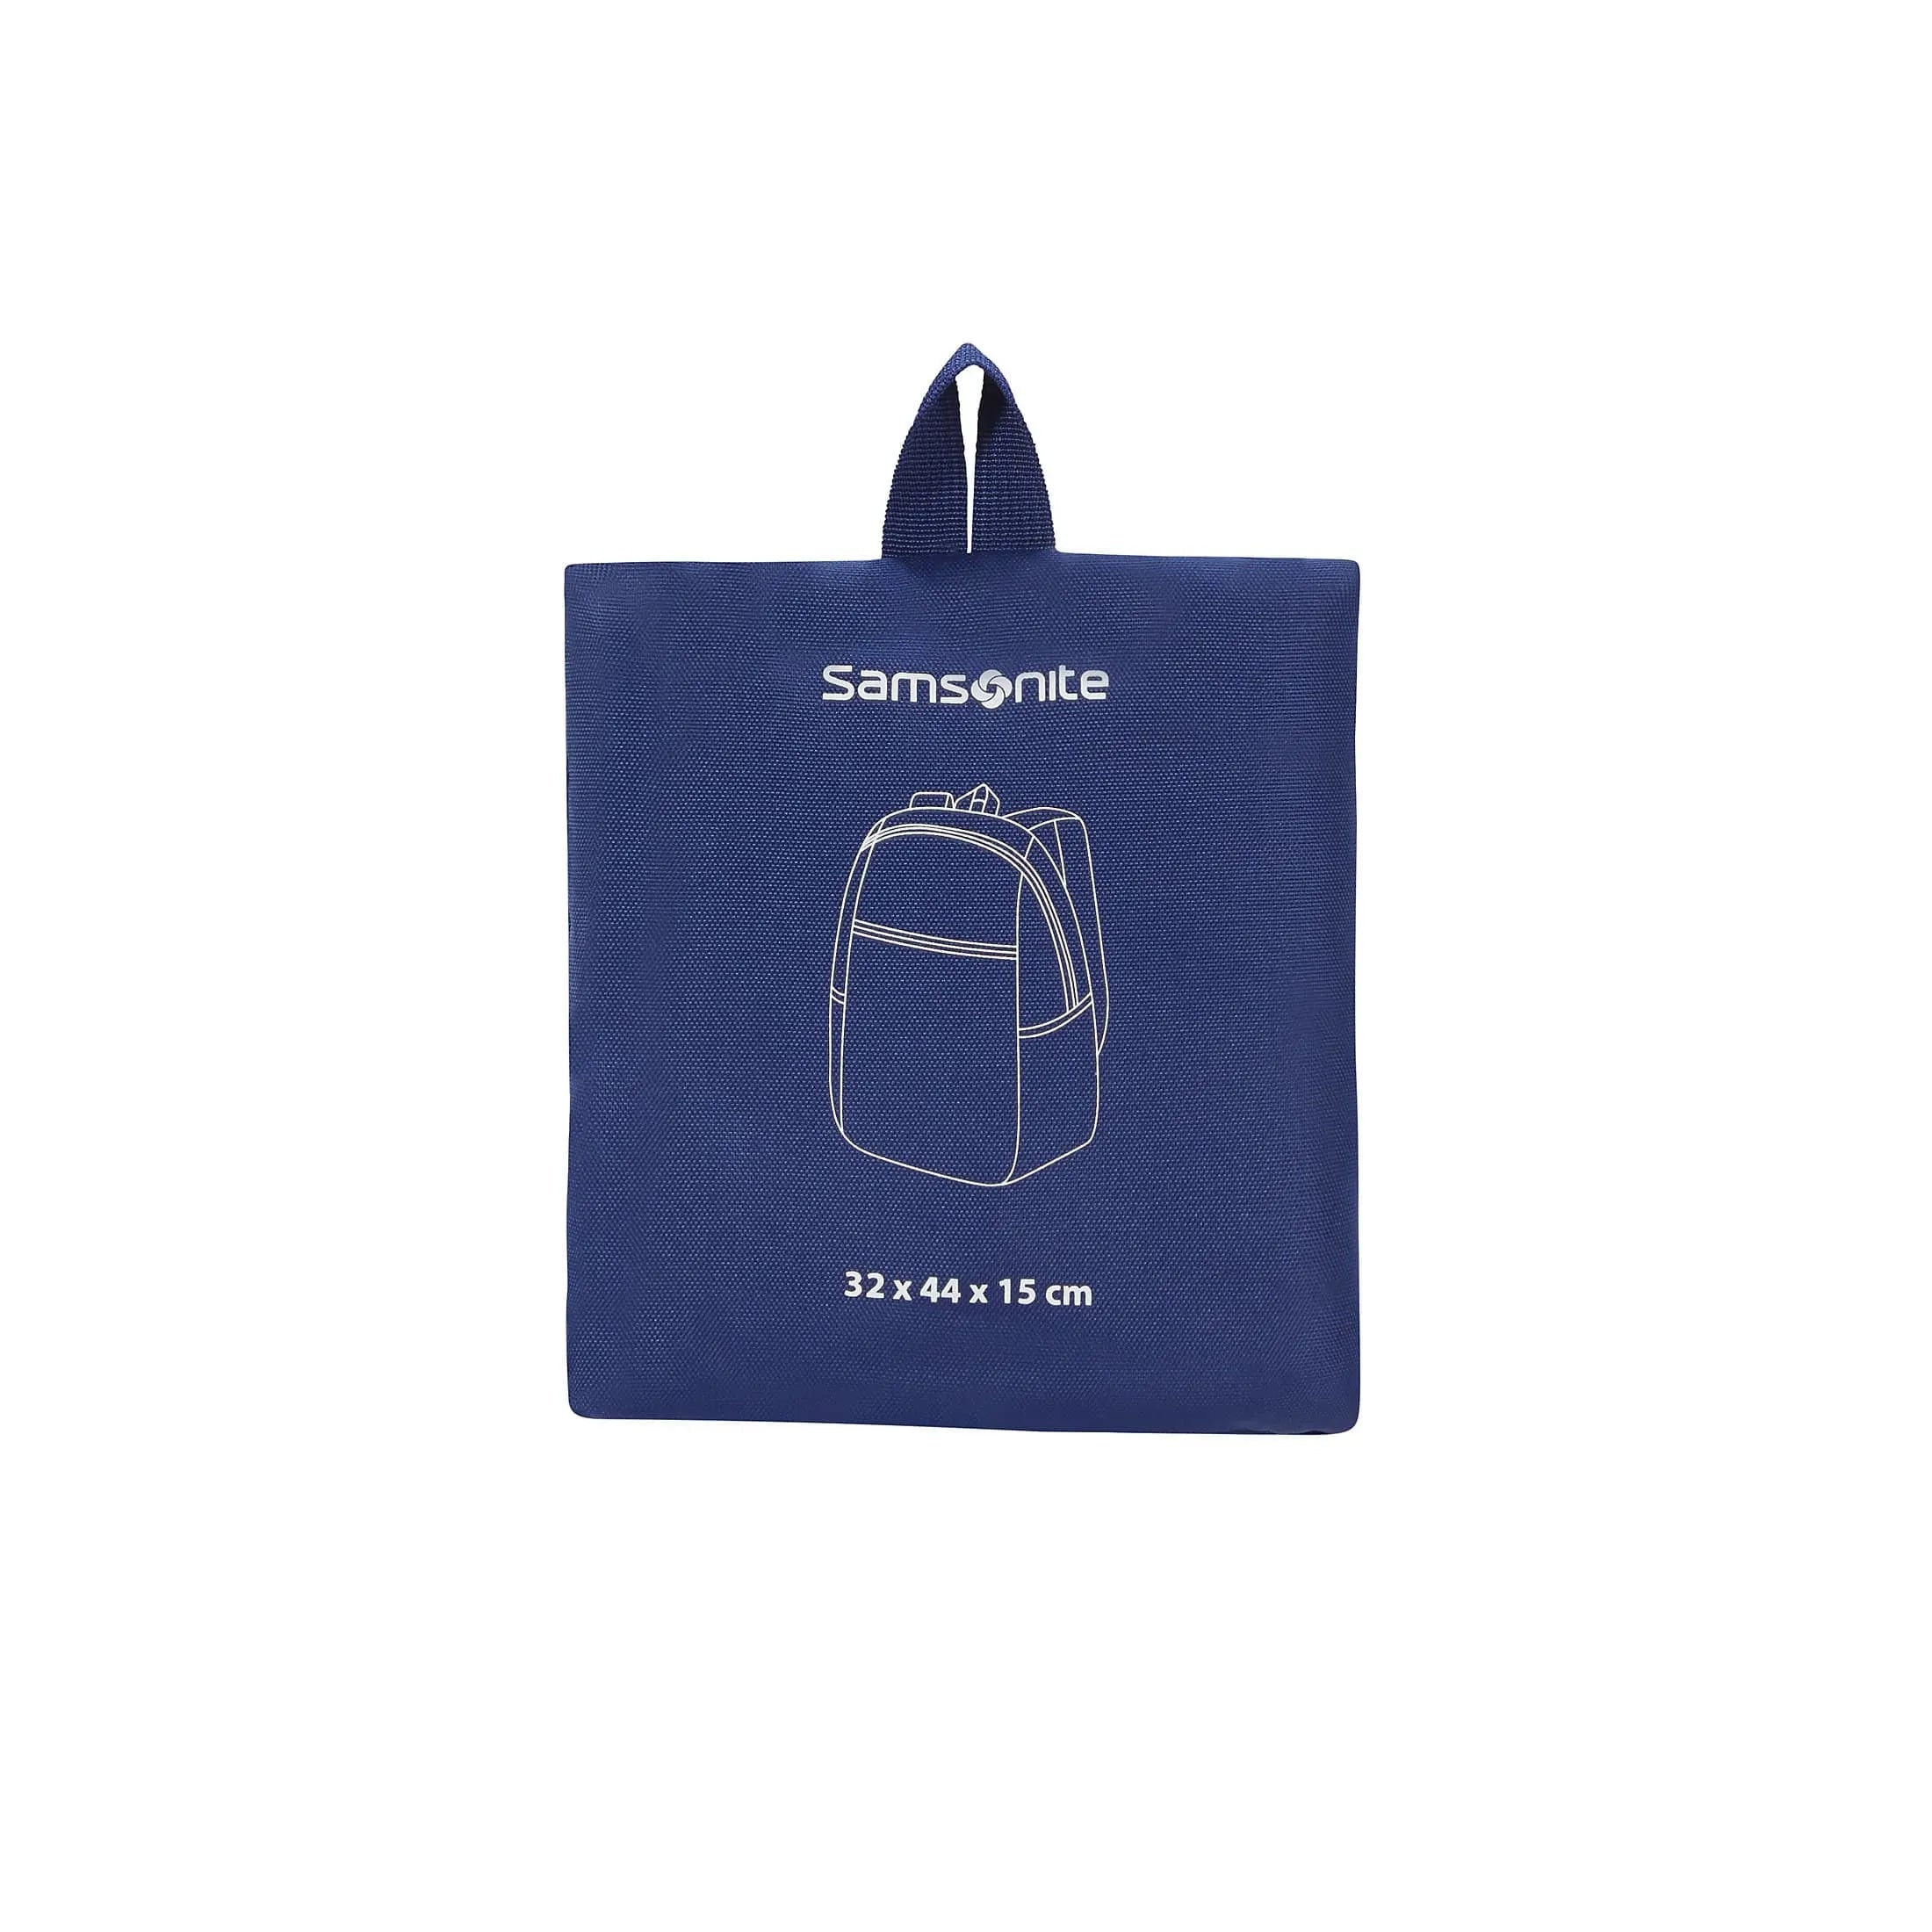 Samsonite Travel Accessories sac à dos pliable 44 cm - bleu nuit